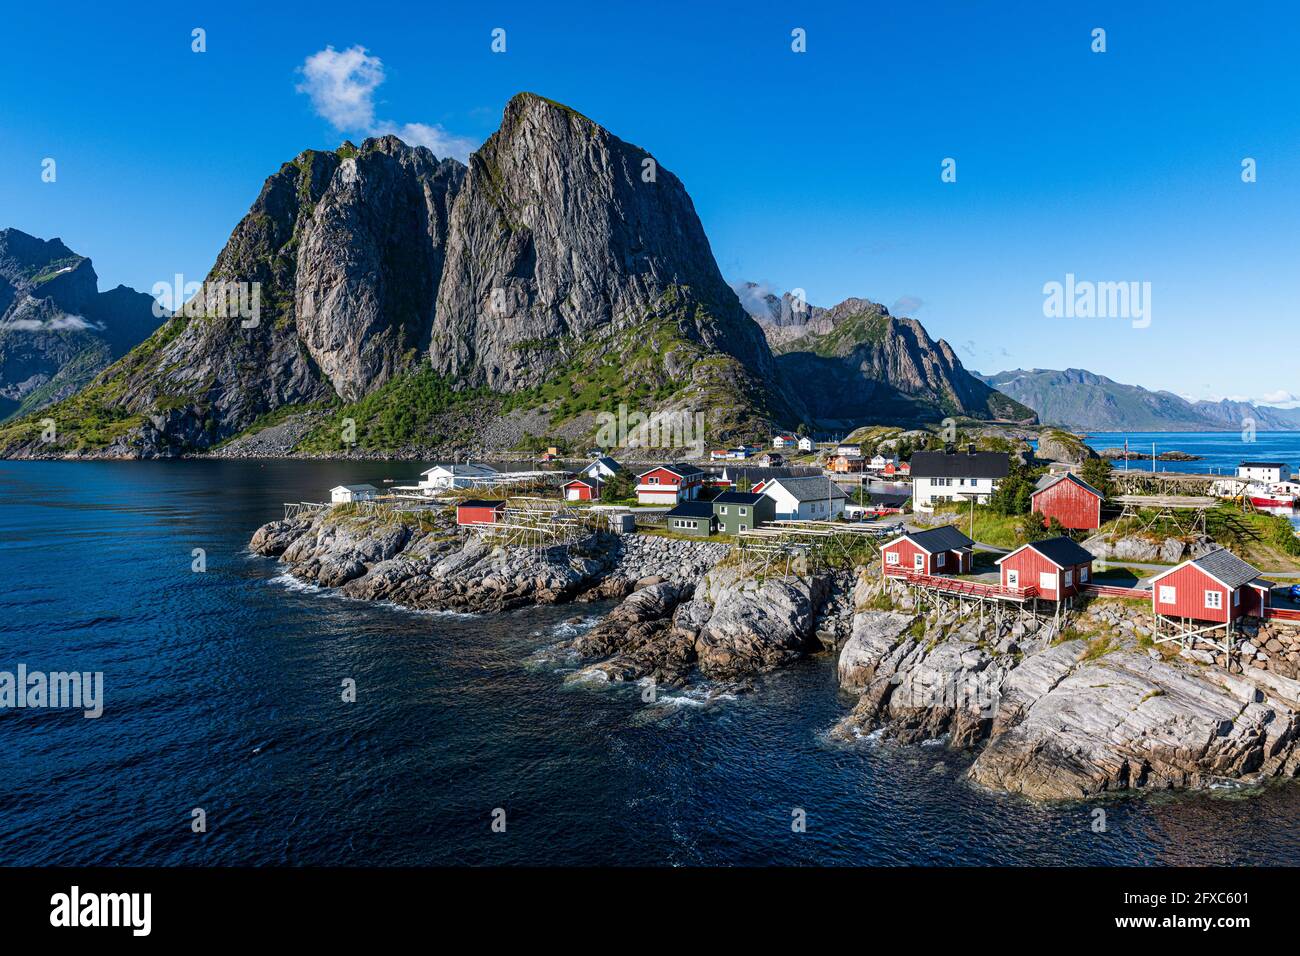 Maisons au port de Reine, Lofoten, Norvège Banque D'Images